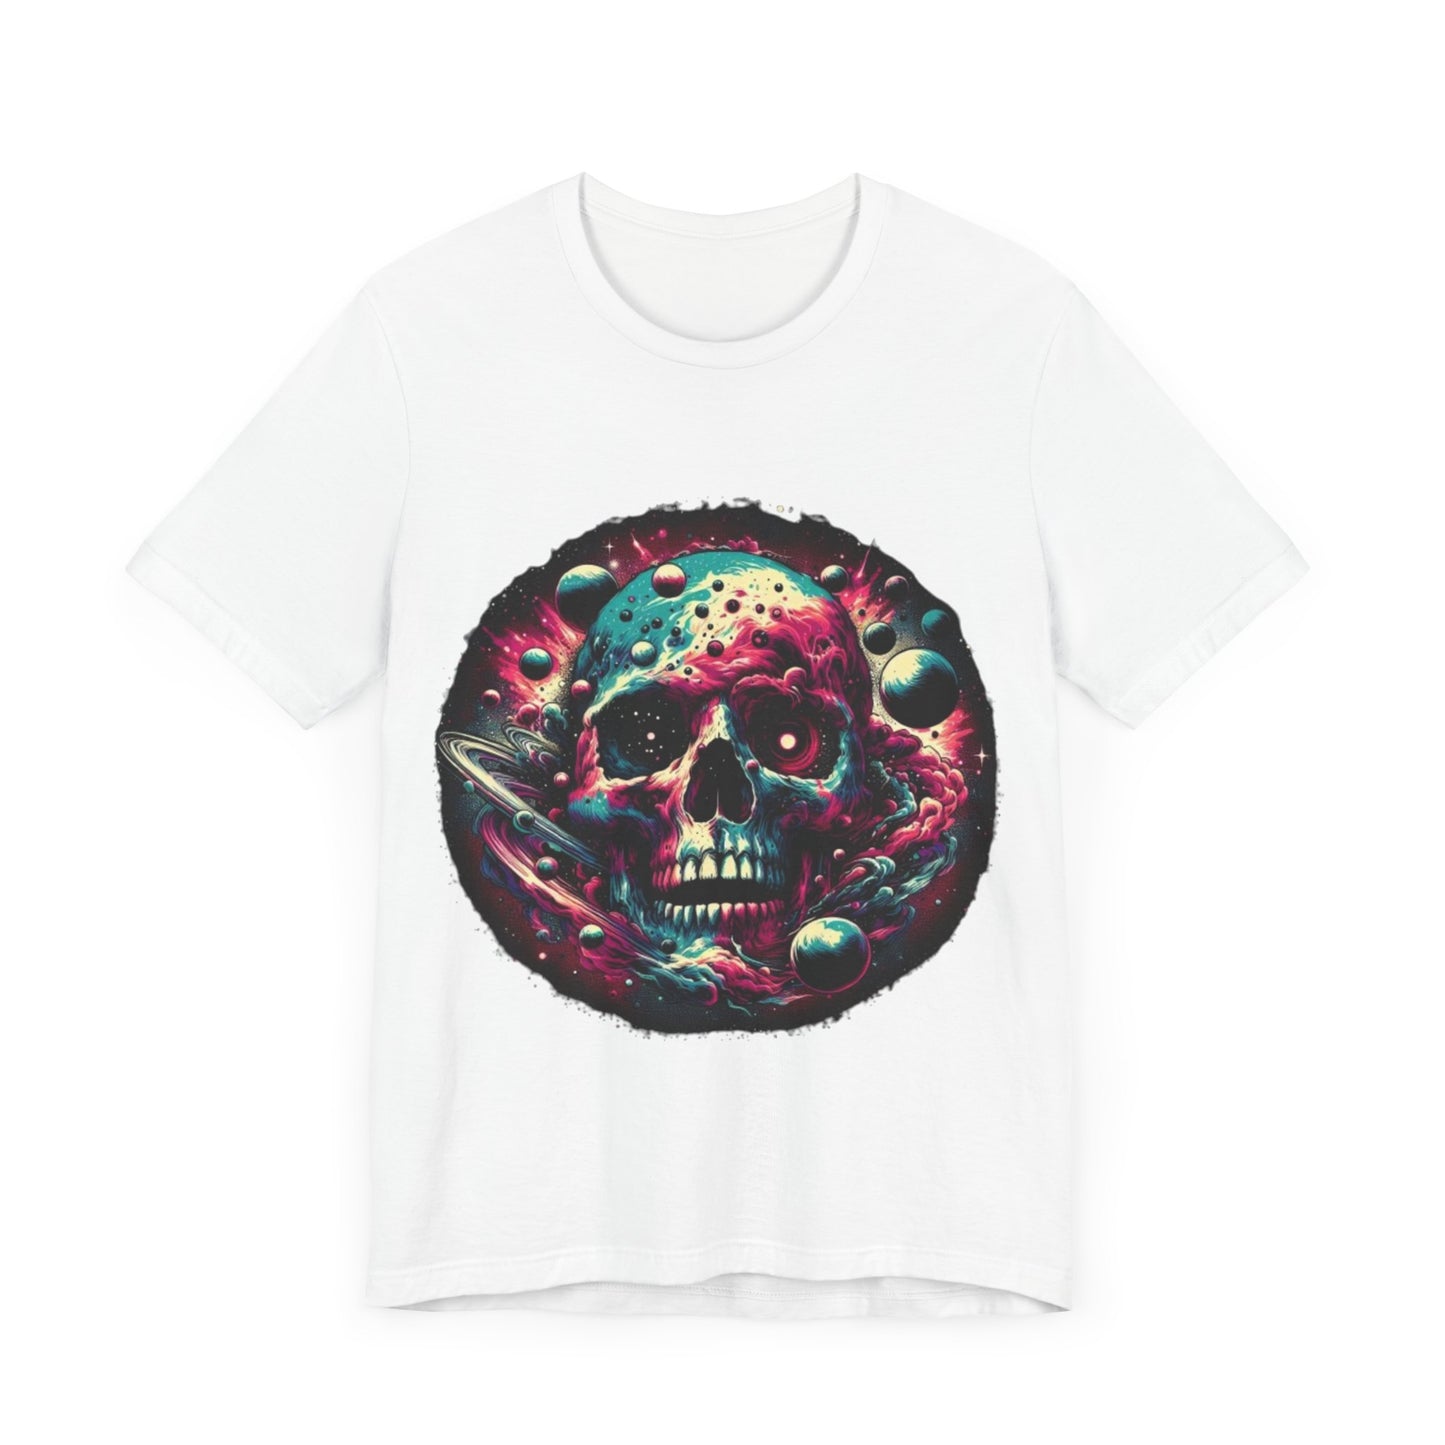 Unisex Cosmic Skull Galaxy T-shirt